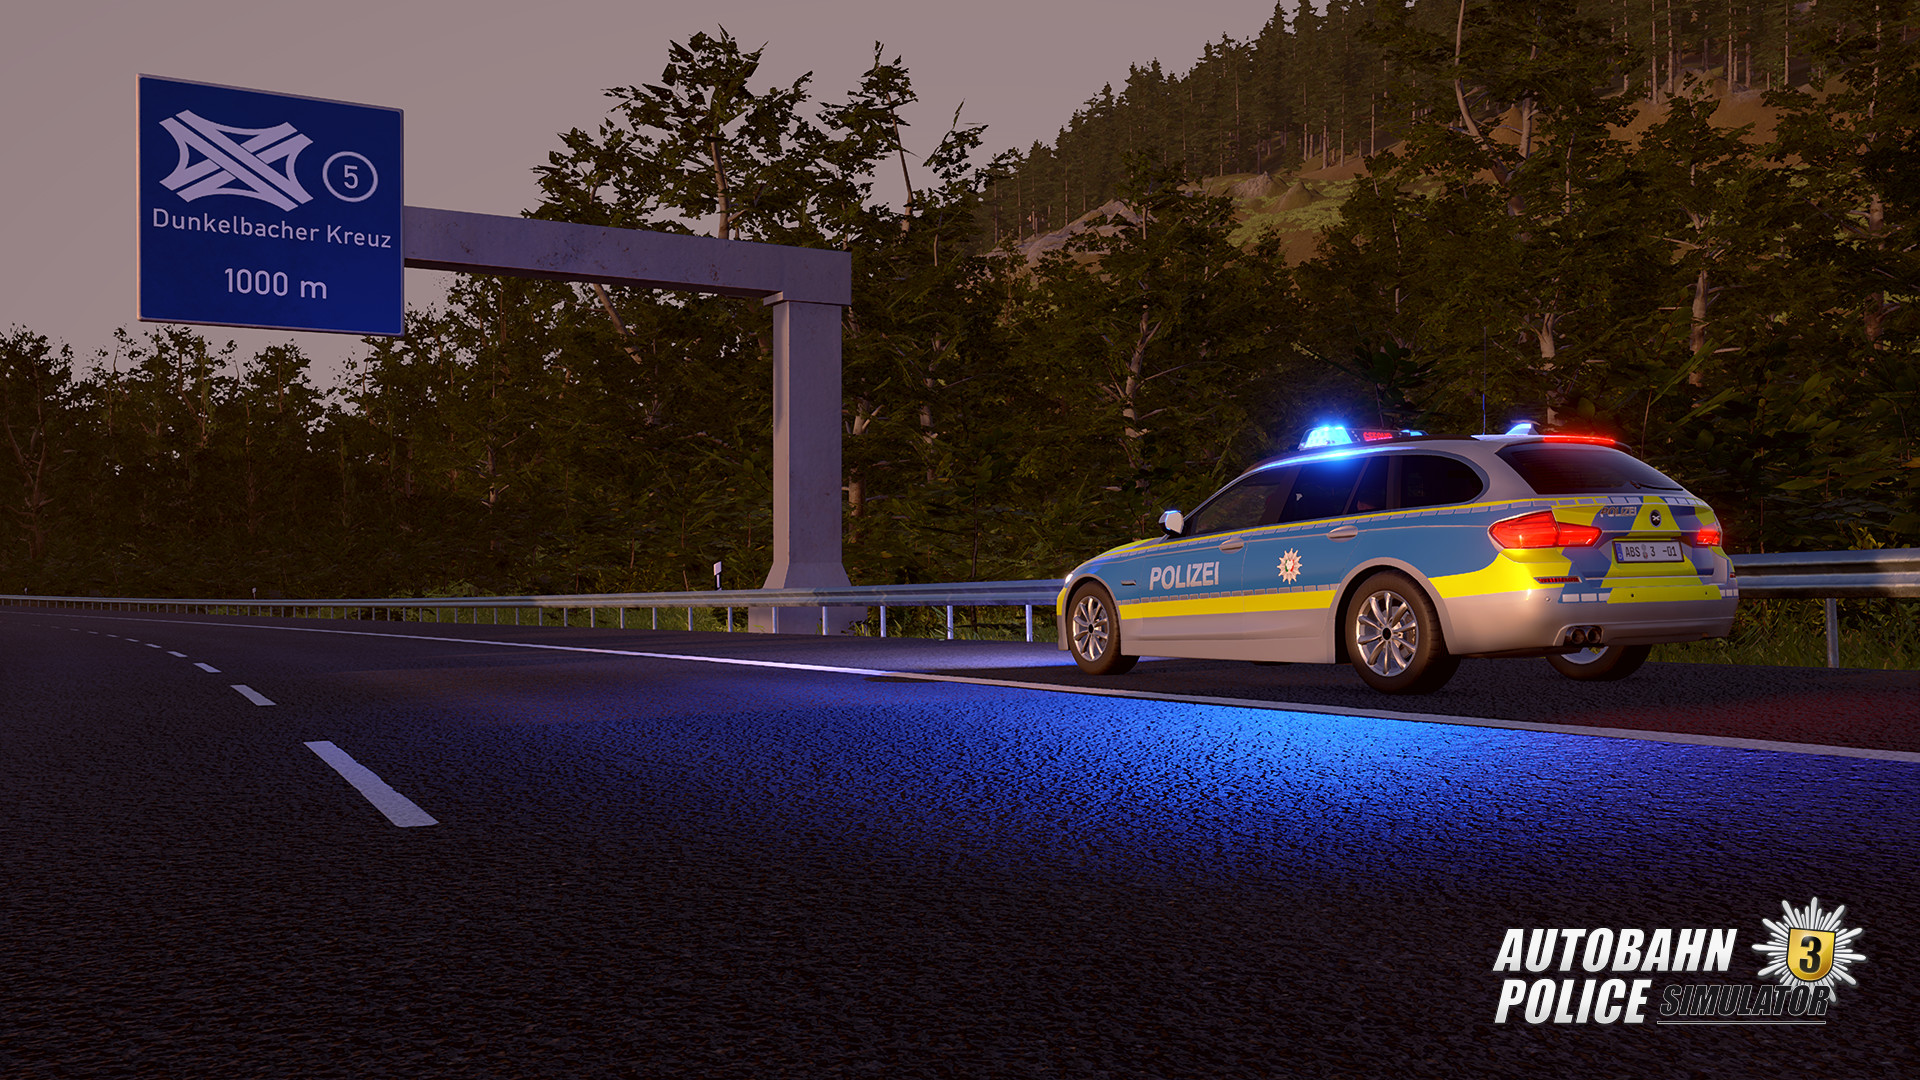 Autobahn Police Simulator 3 on Steam